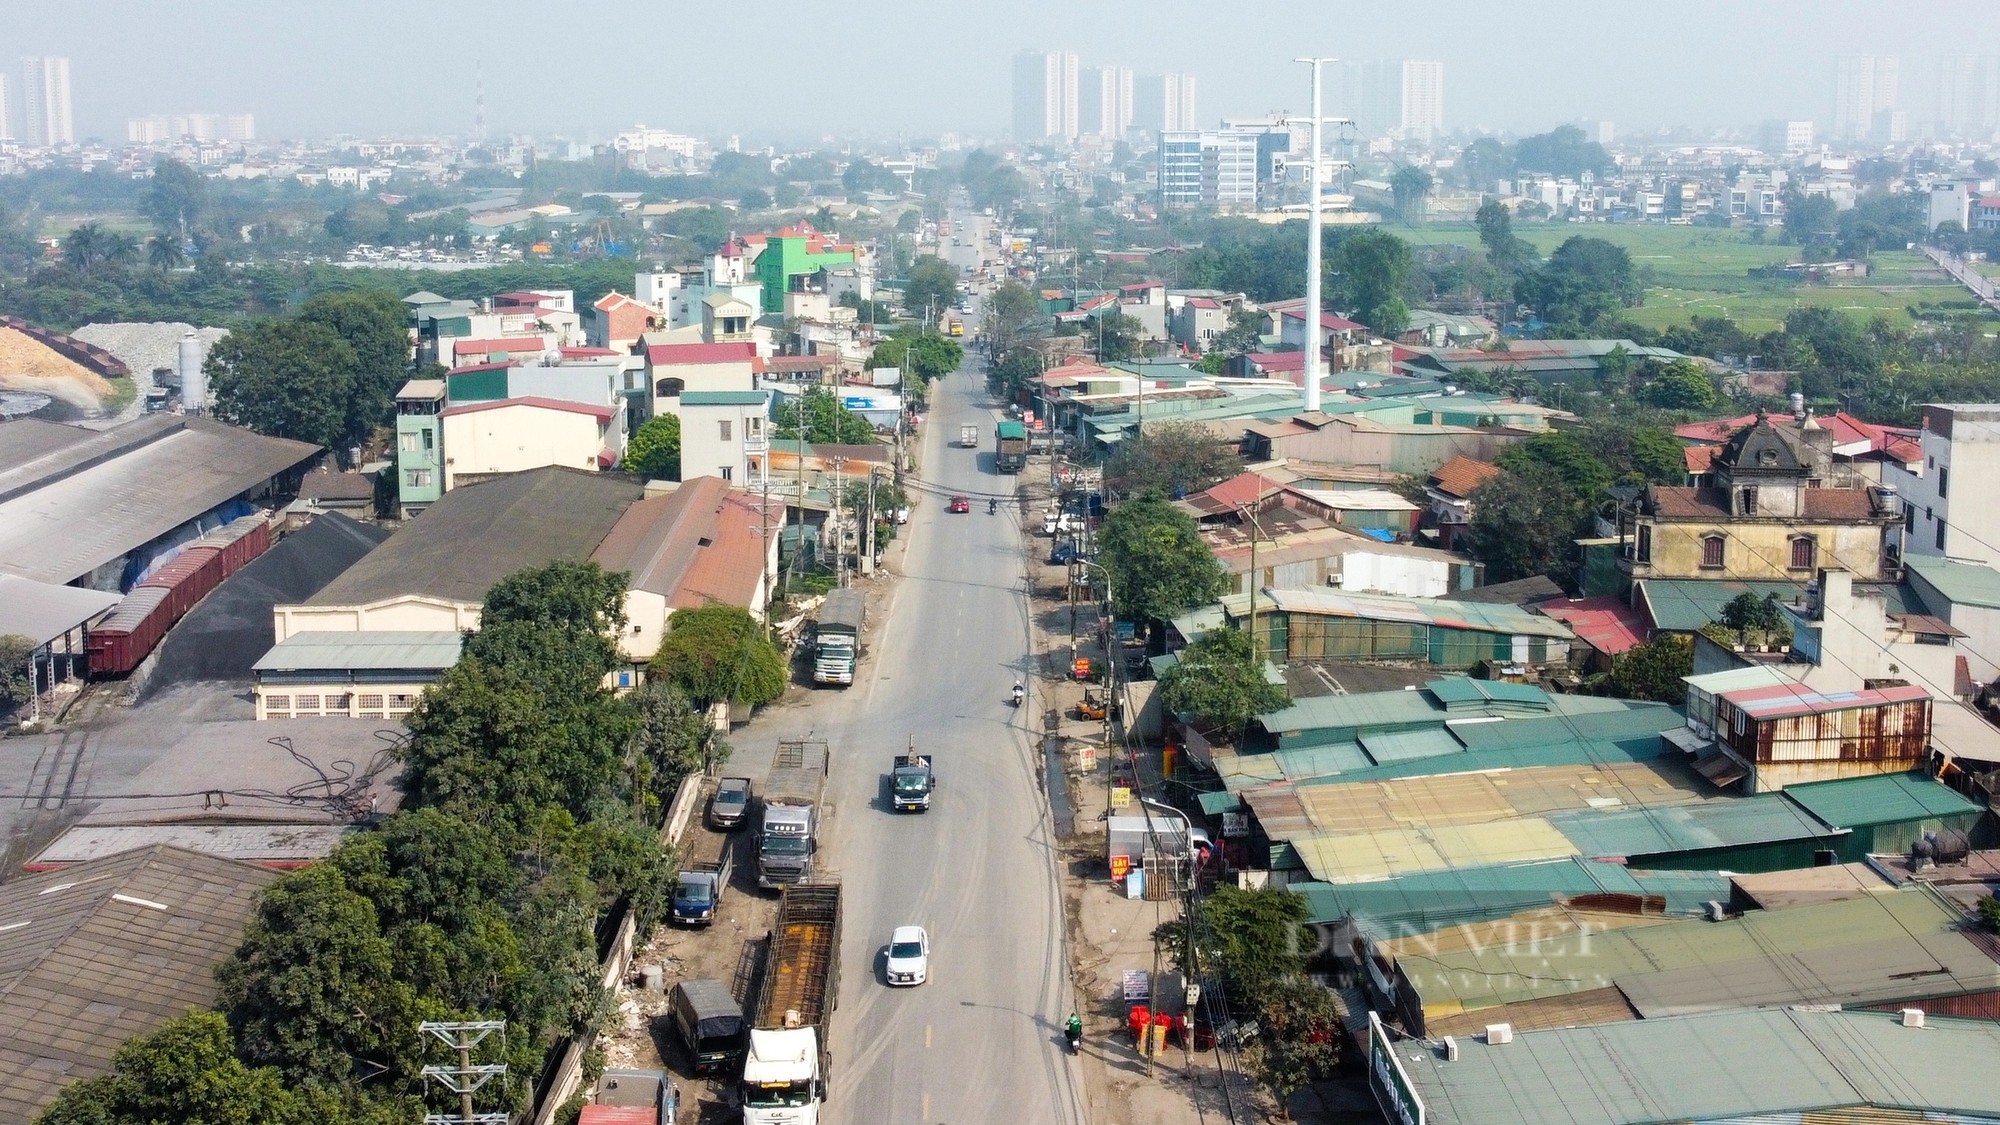 Cận cảnh tuyến đường ở Hà Nội sắp được chi 2.800 tỷ đồng để mở rộng- Ảnh 2.